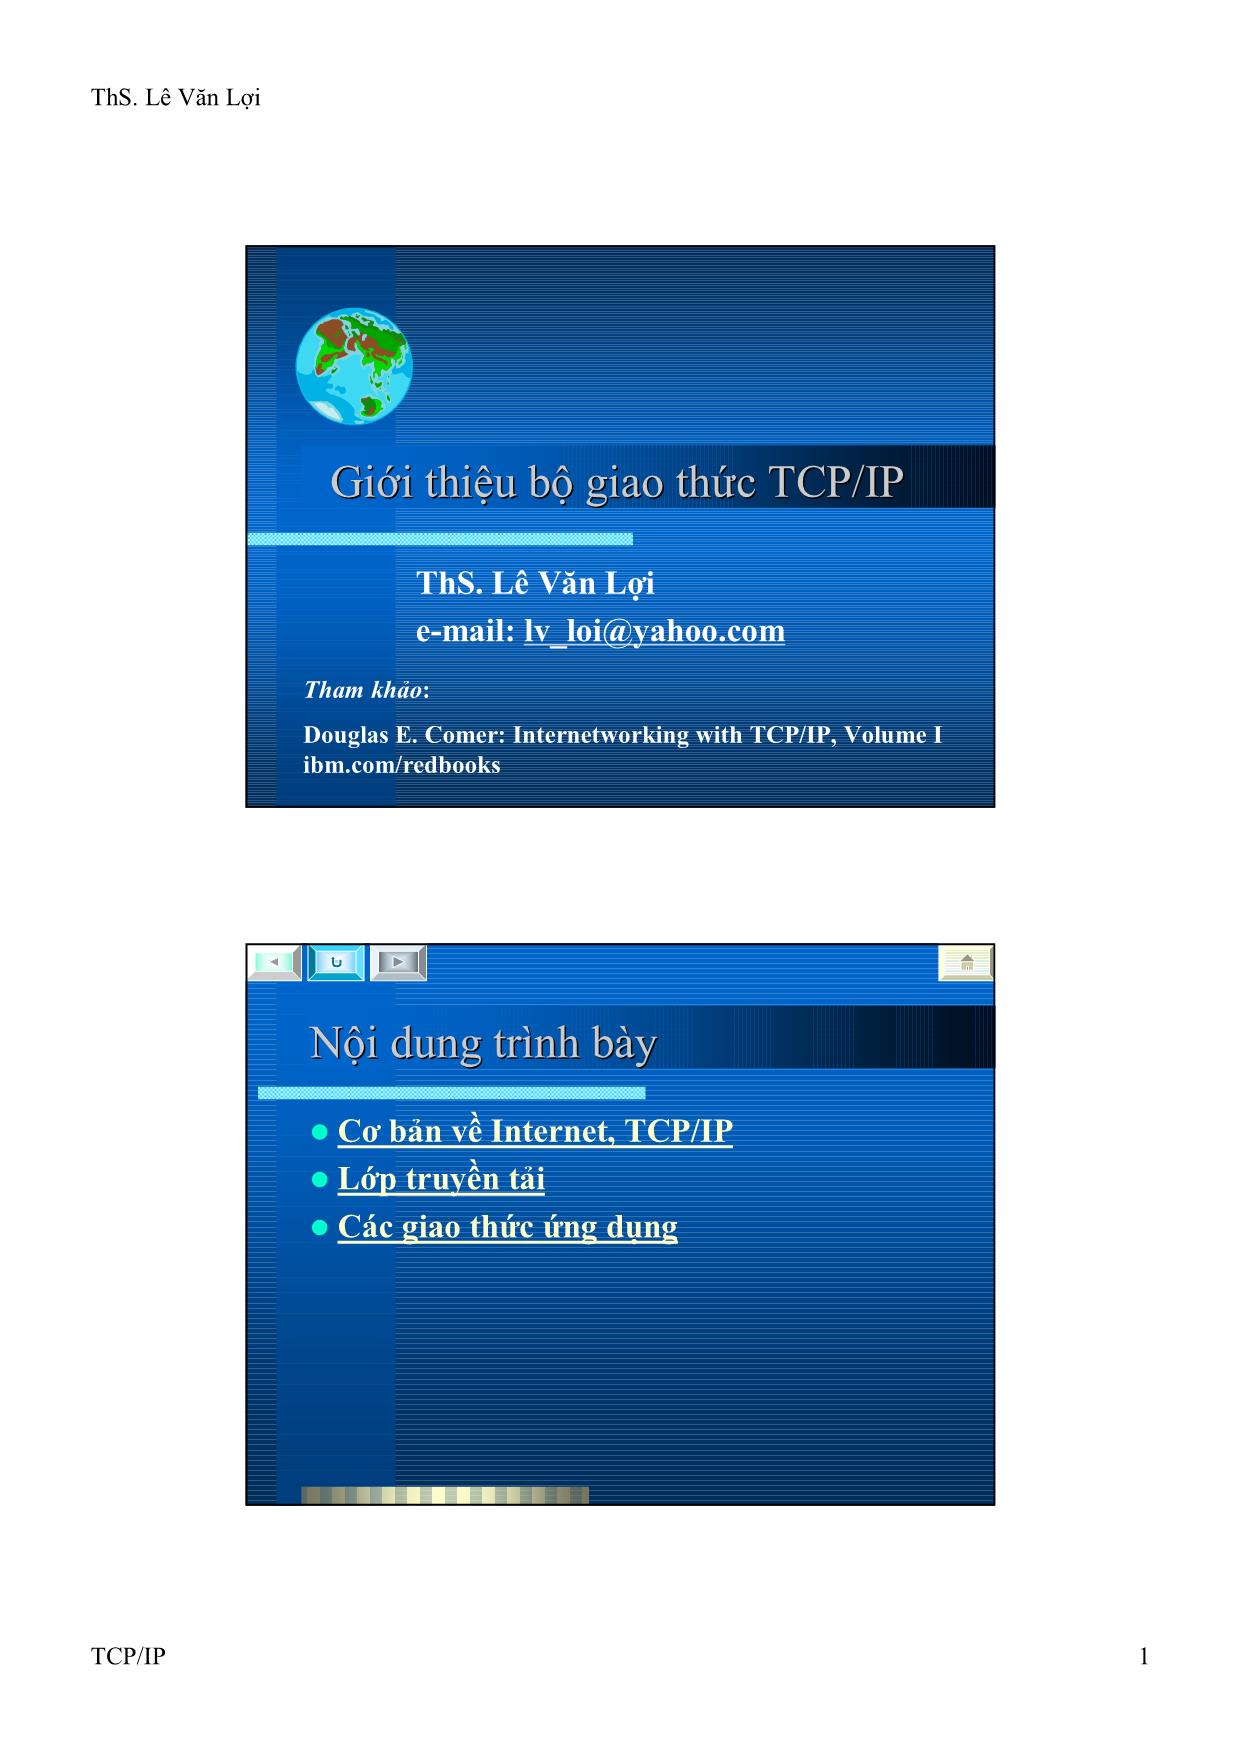 Bài giảng Mạng máy tính và Internet - Chương: Giới thiệu bộ giao thức TCP/IP - Lê Văn Lợi trang 1